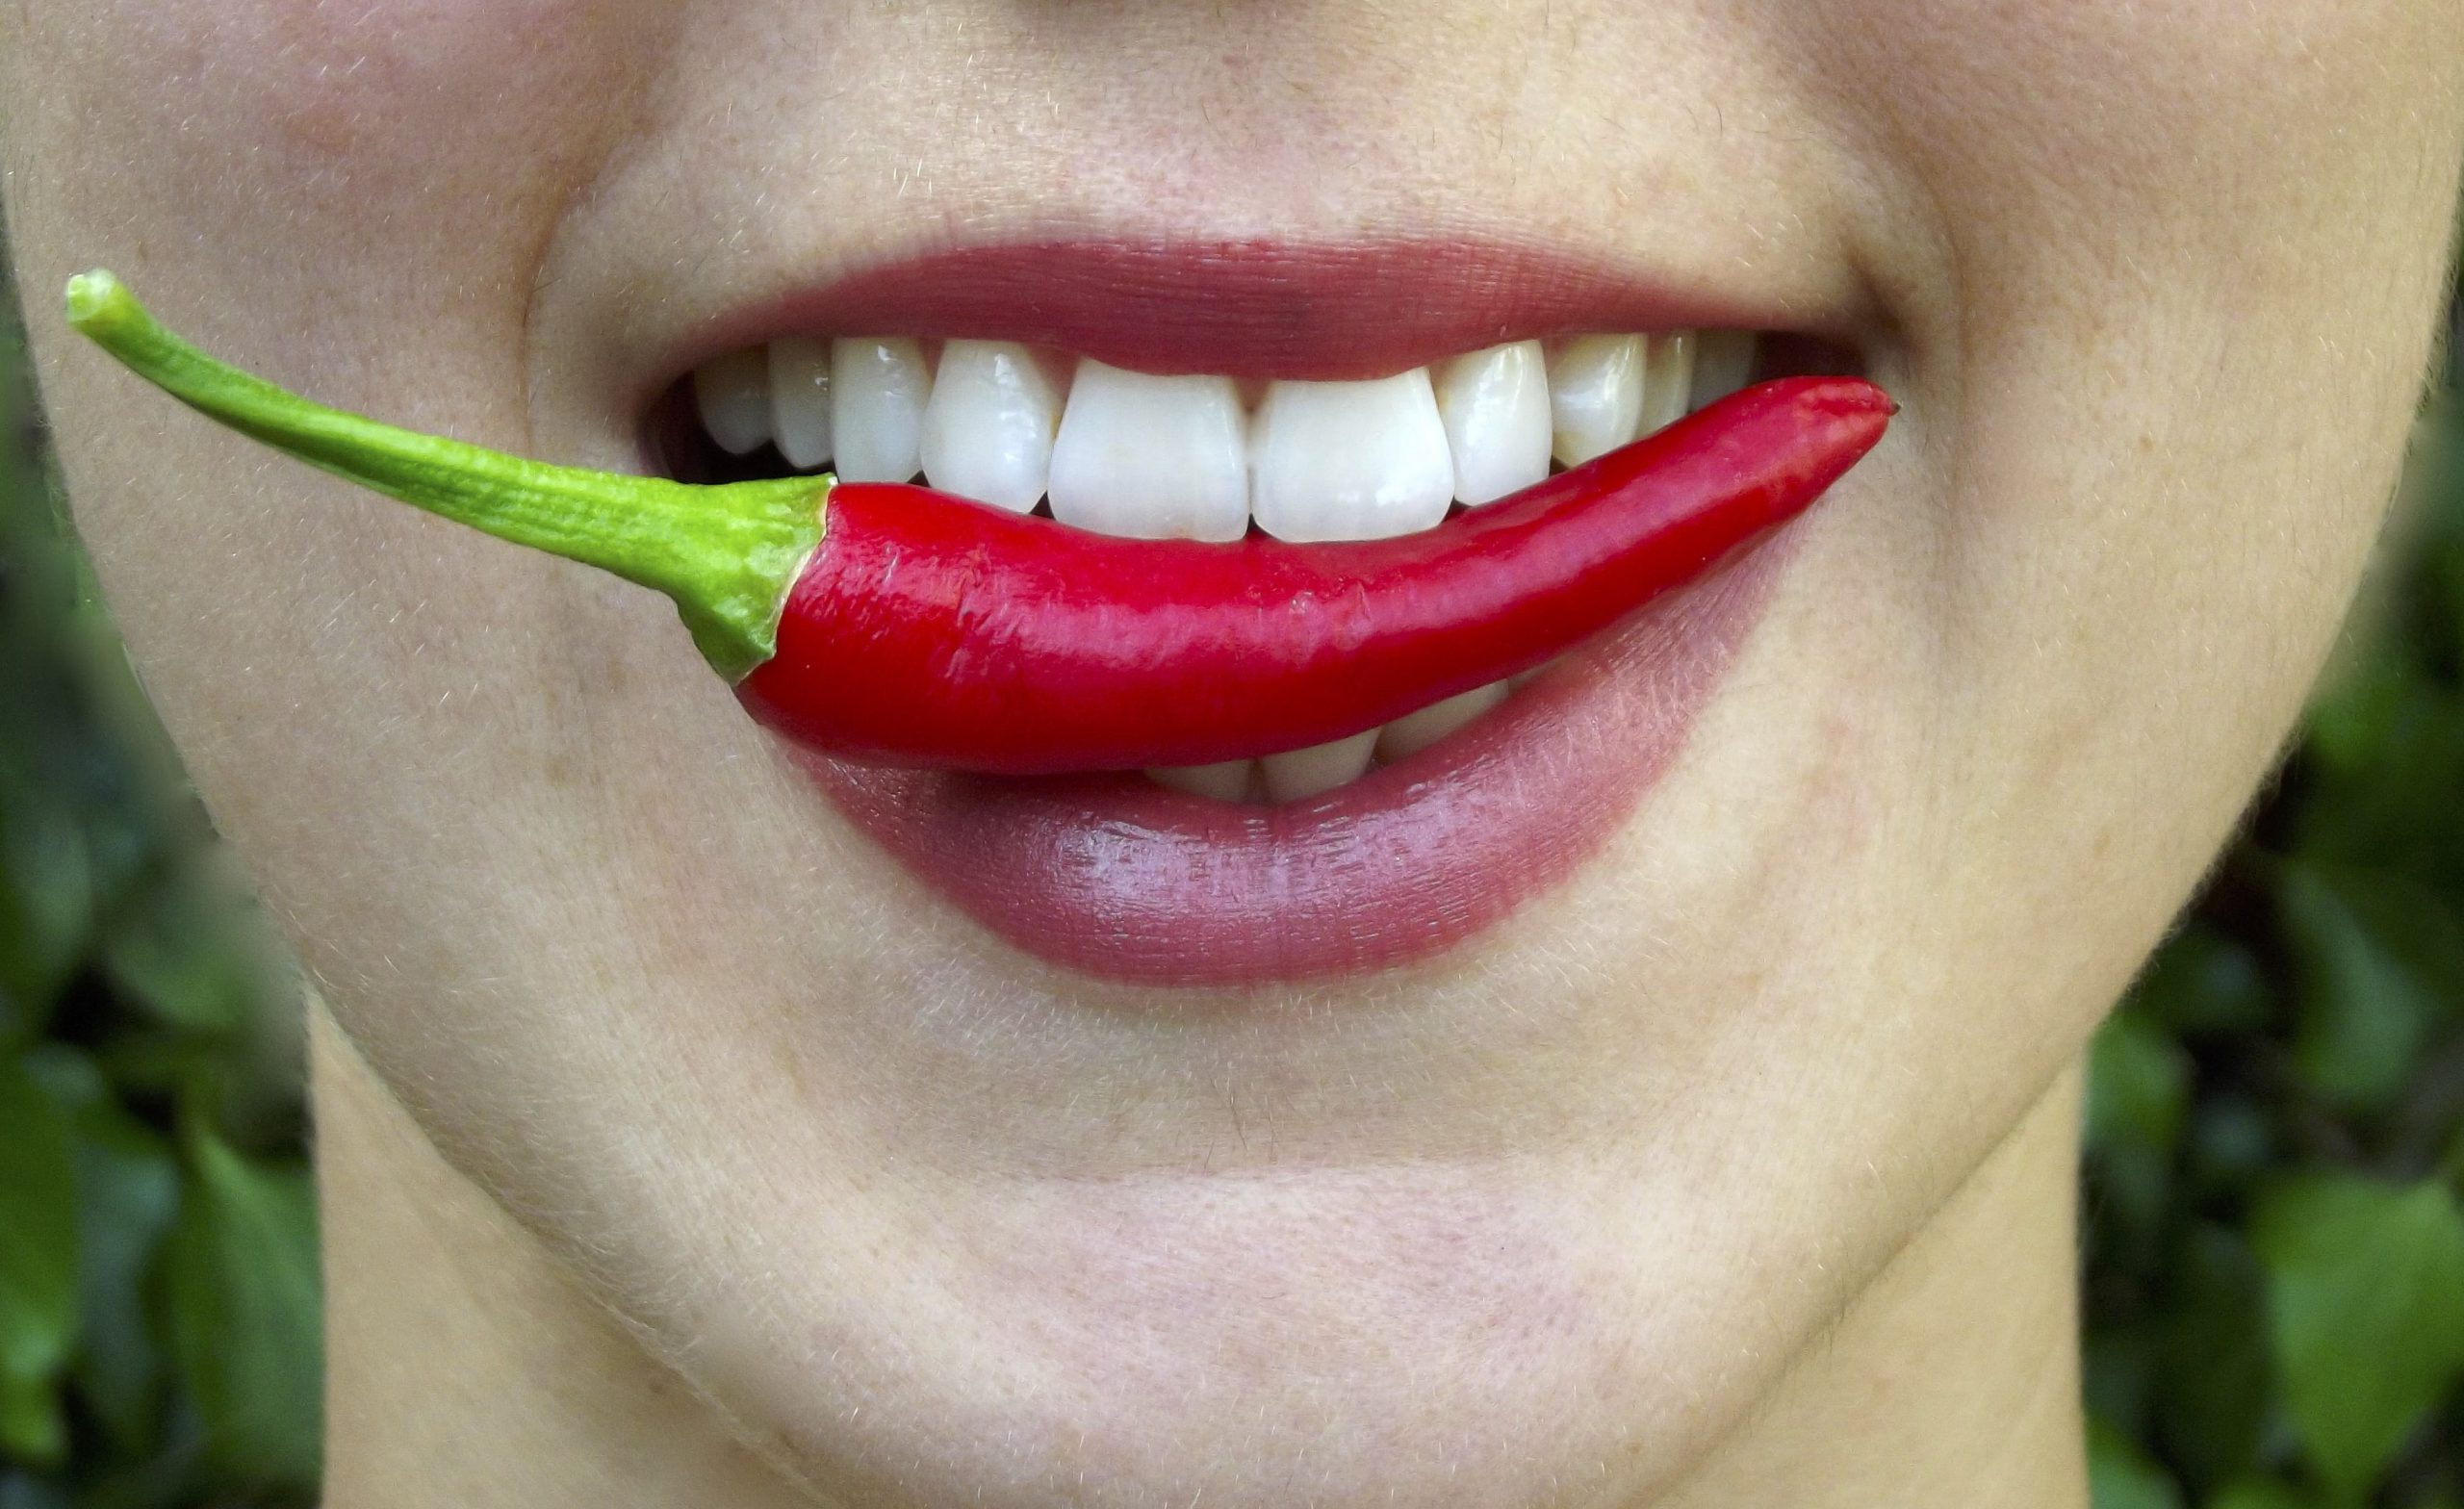 Frau mit einer Chili zwischen den Zähnen